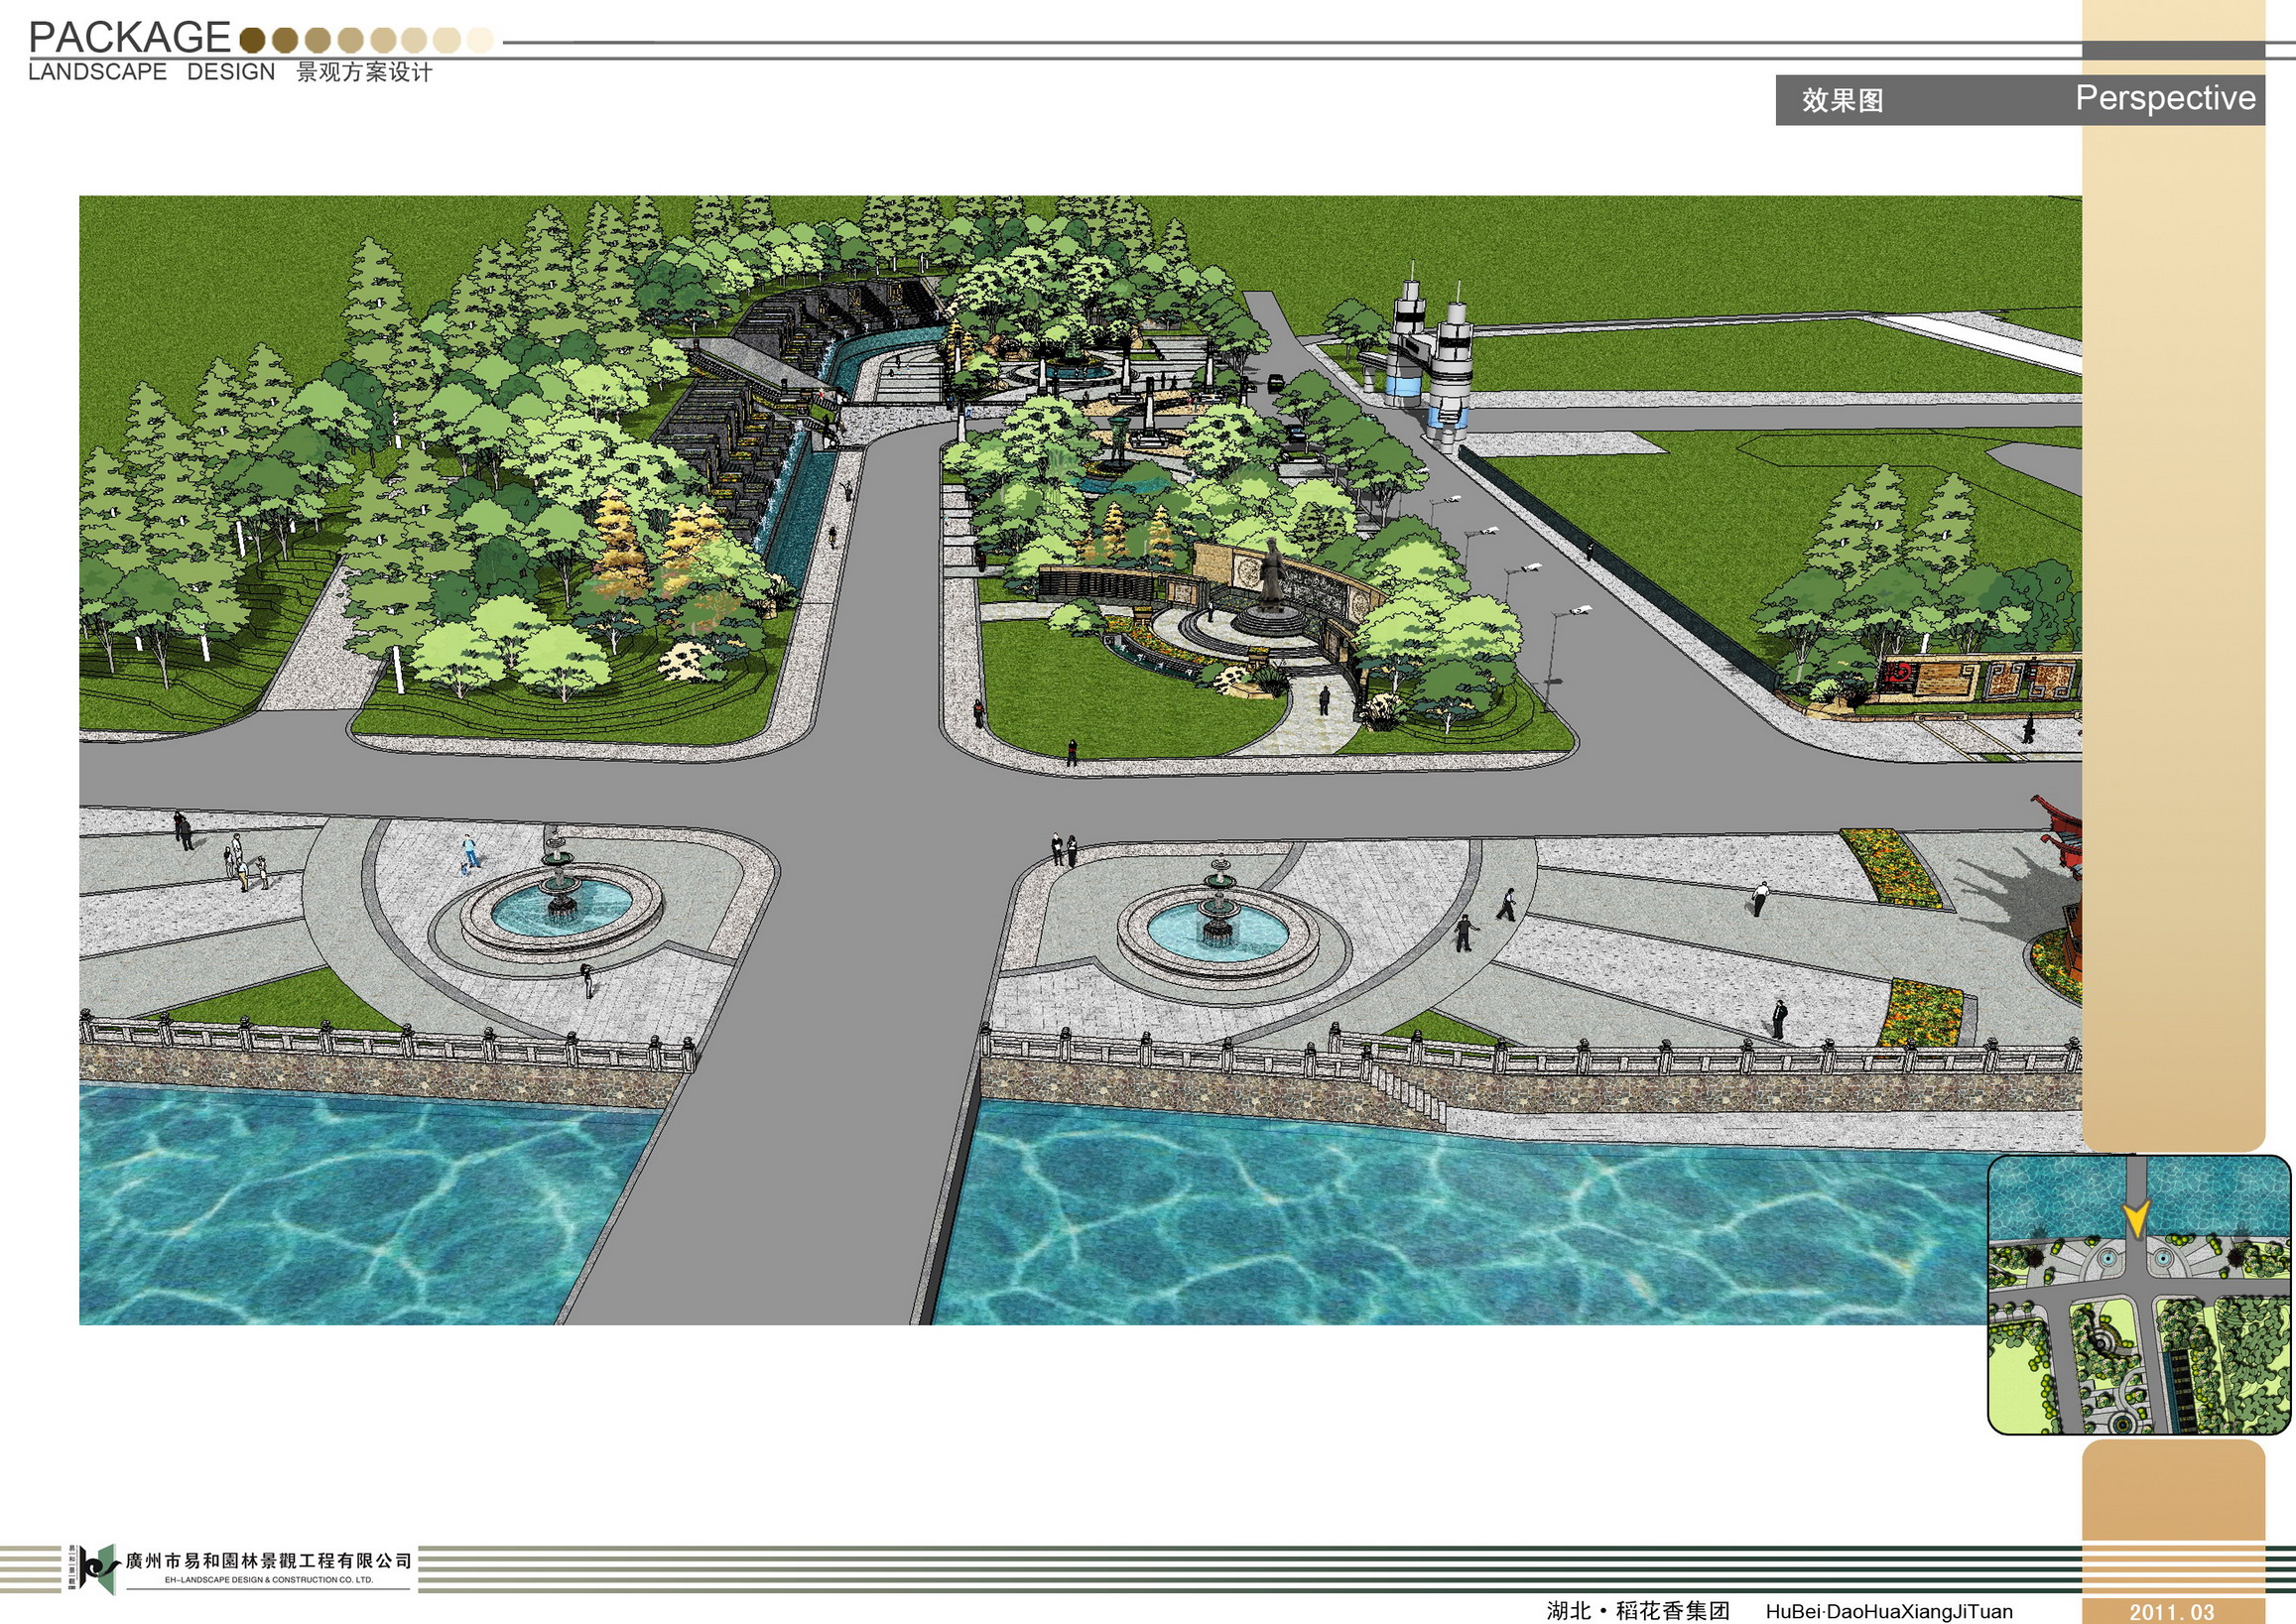 简介:景观小区园林景观设计总平面图,包括宅间绿地及居住区绿化中心